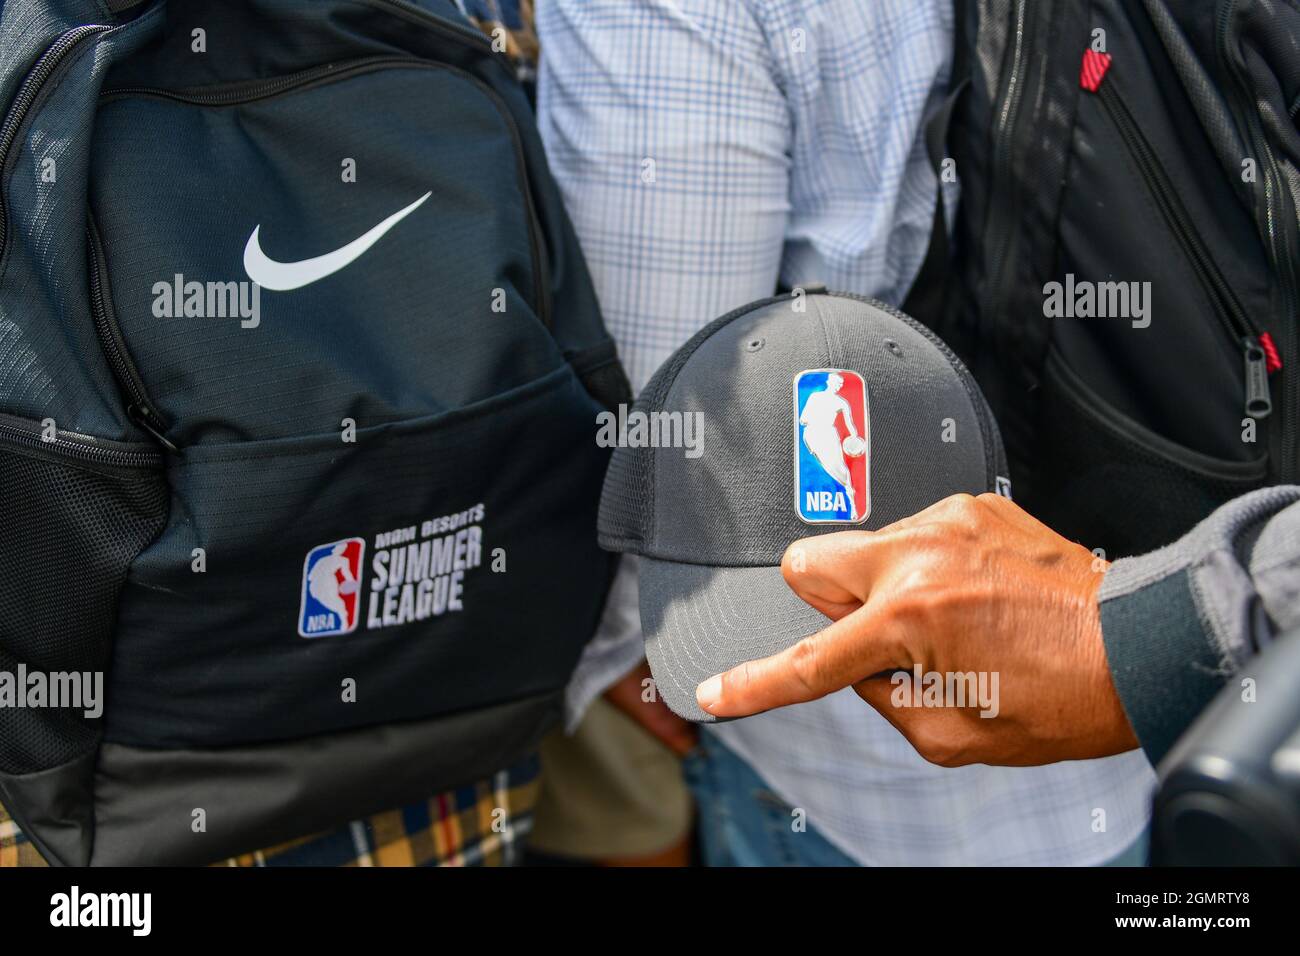 Ein Fotograf hält einen Hut mit dem NBA-Logo neben einem Nike Rucksack, der mit der NBA Summer League bestickt ist, während einer bahnbrechenden Zeremonie für das neue h Stockfoto